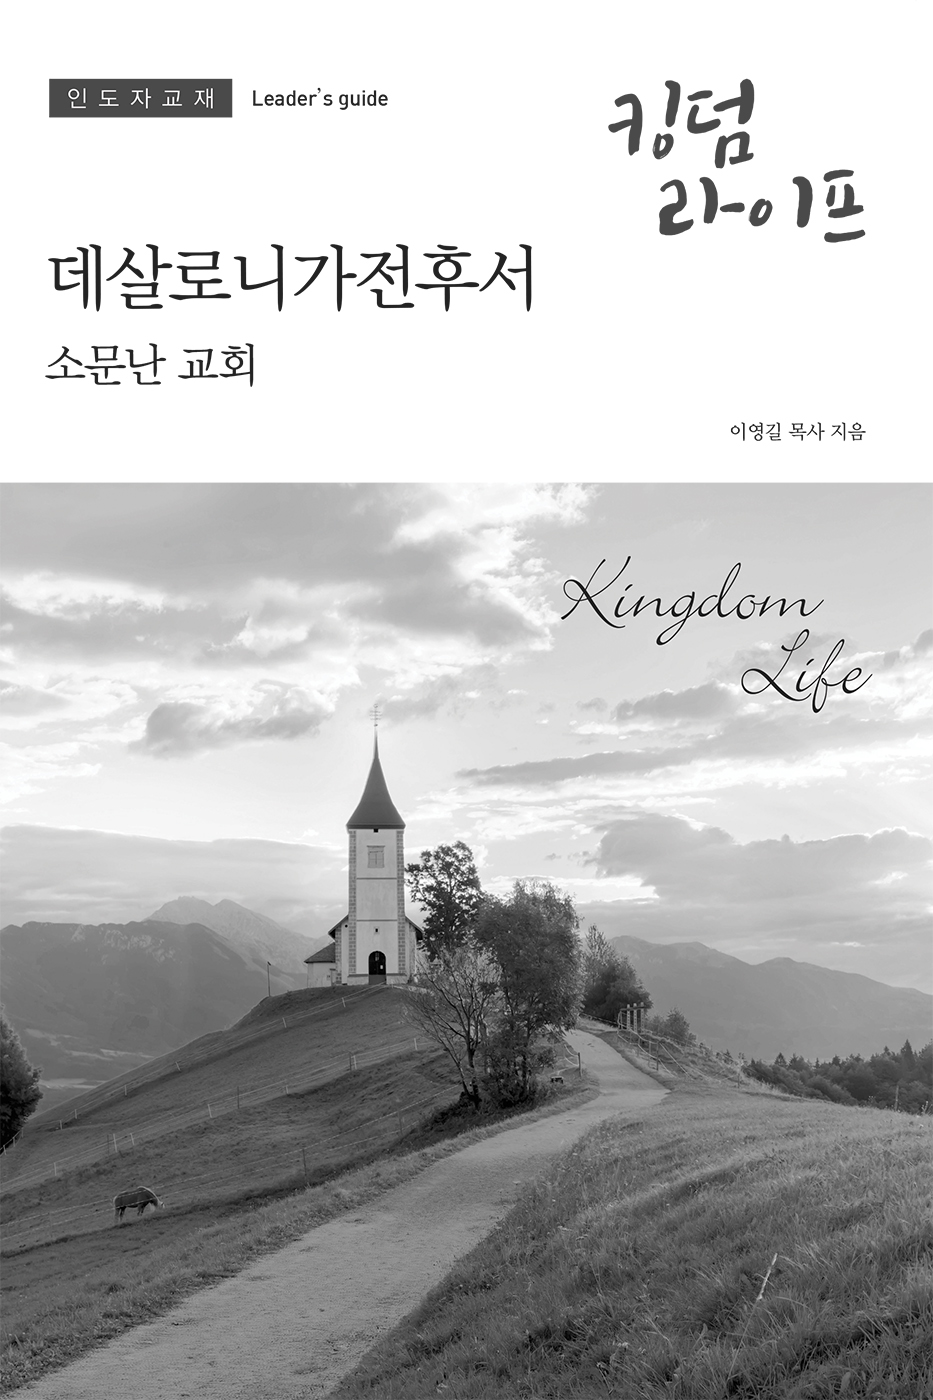 Korean Kingdom Life, Leader's Guide Fall 2019 PDF